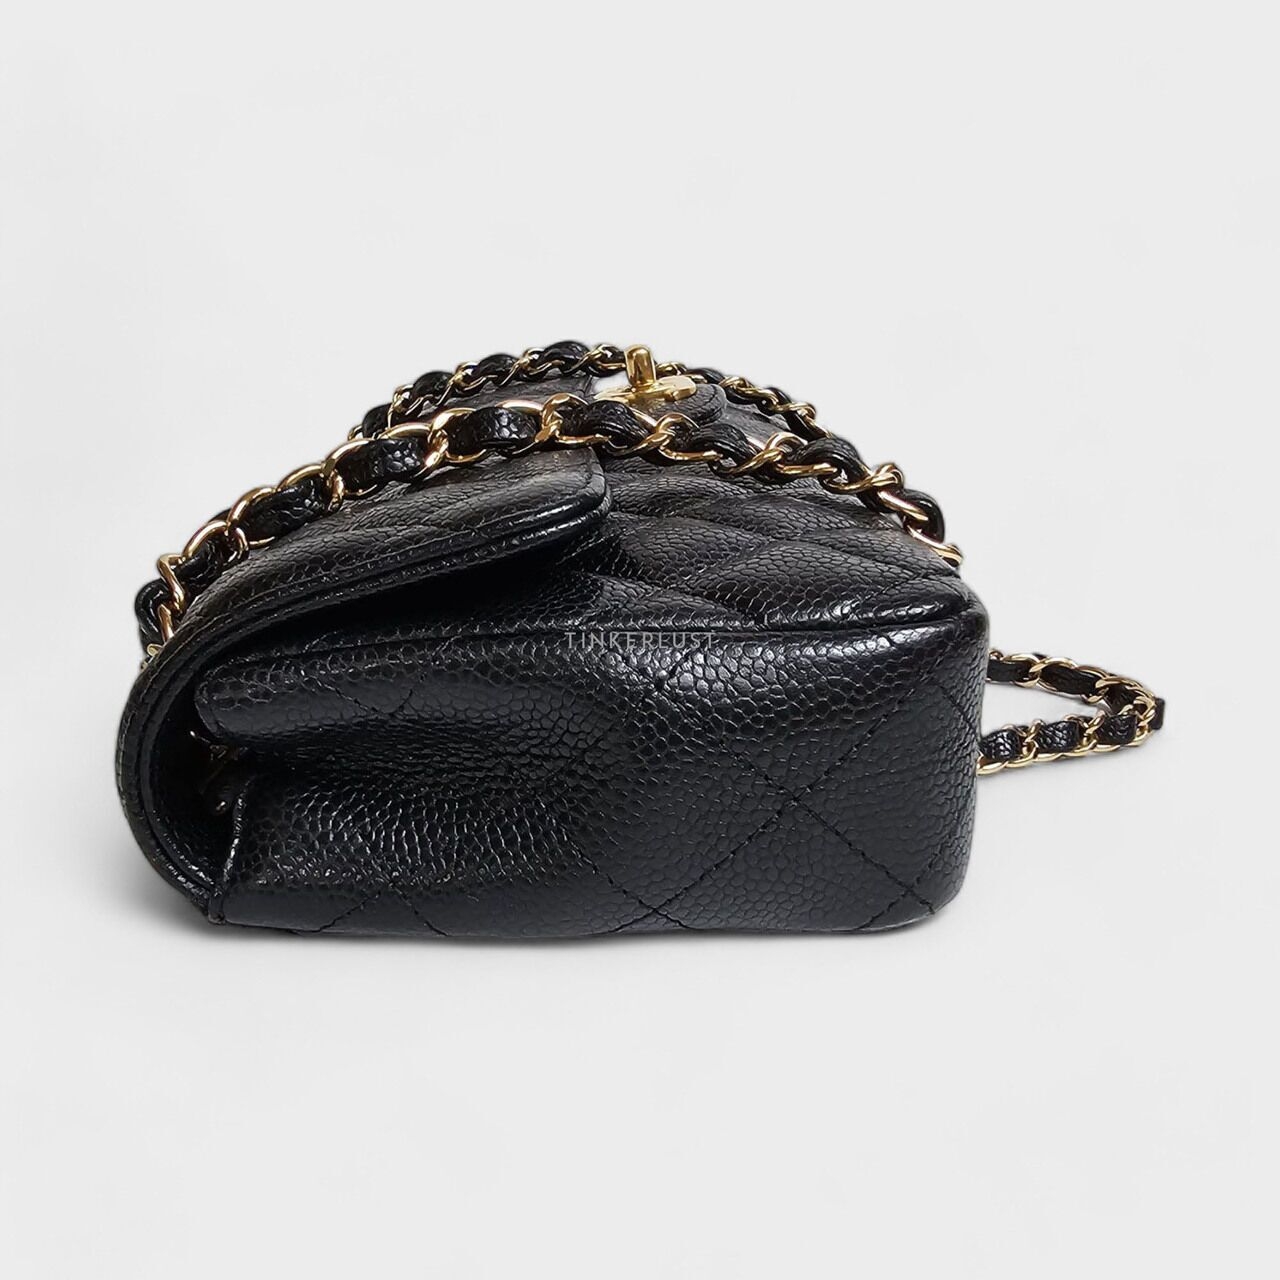 Chanel East West Black Caviar GHW Shoulder Bag